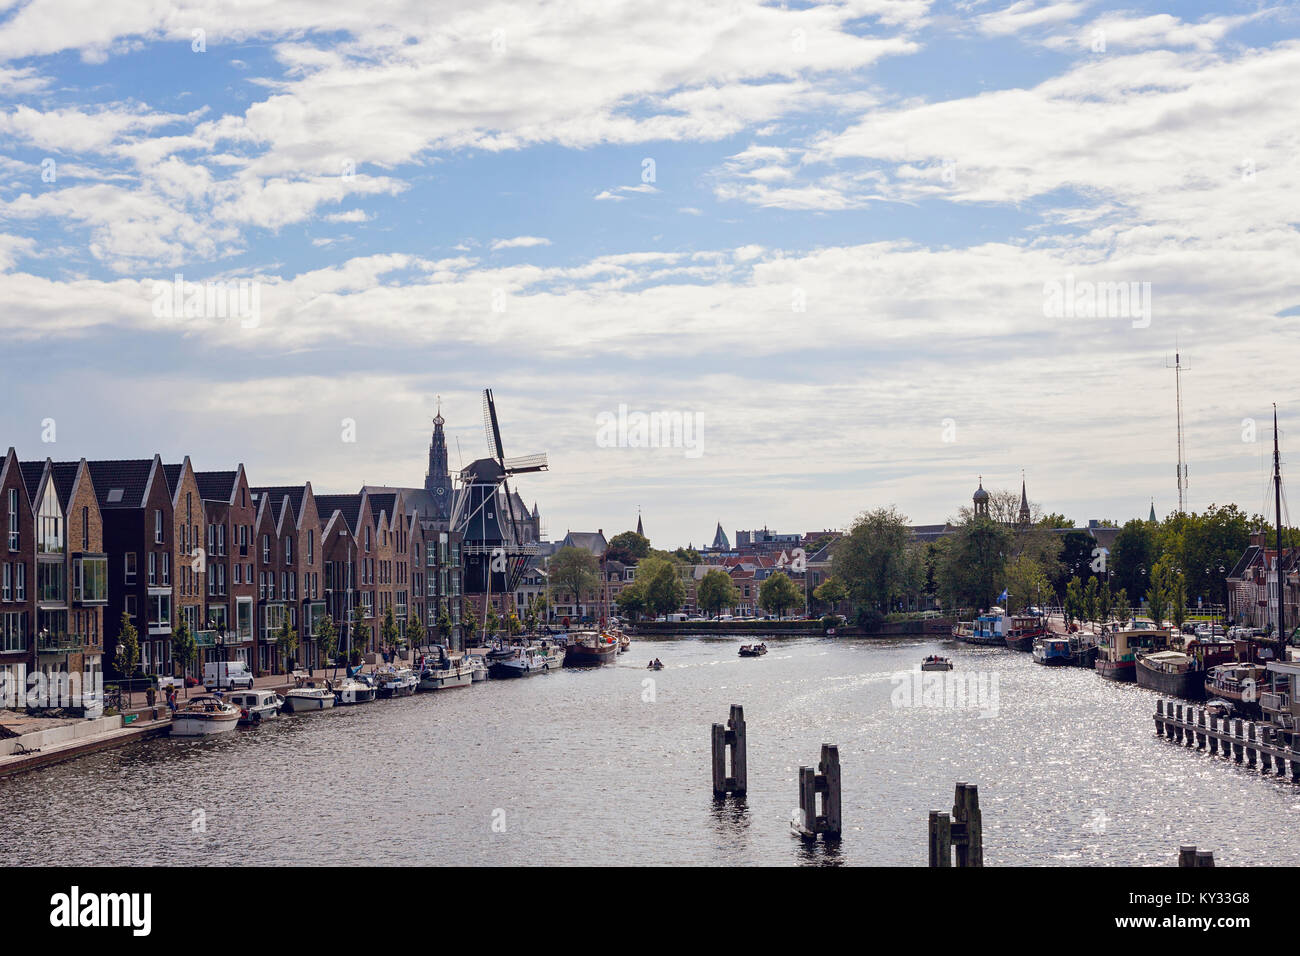 Haarlem, Pays-Bas. De Adriaan, monument moulin dans le centre de Haarlem sur la rivière Spaarne Banque D'Images